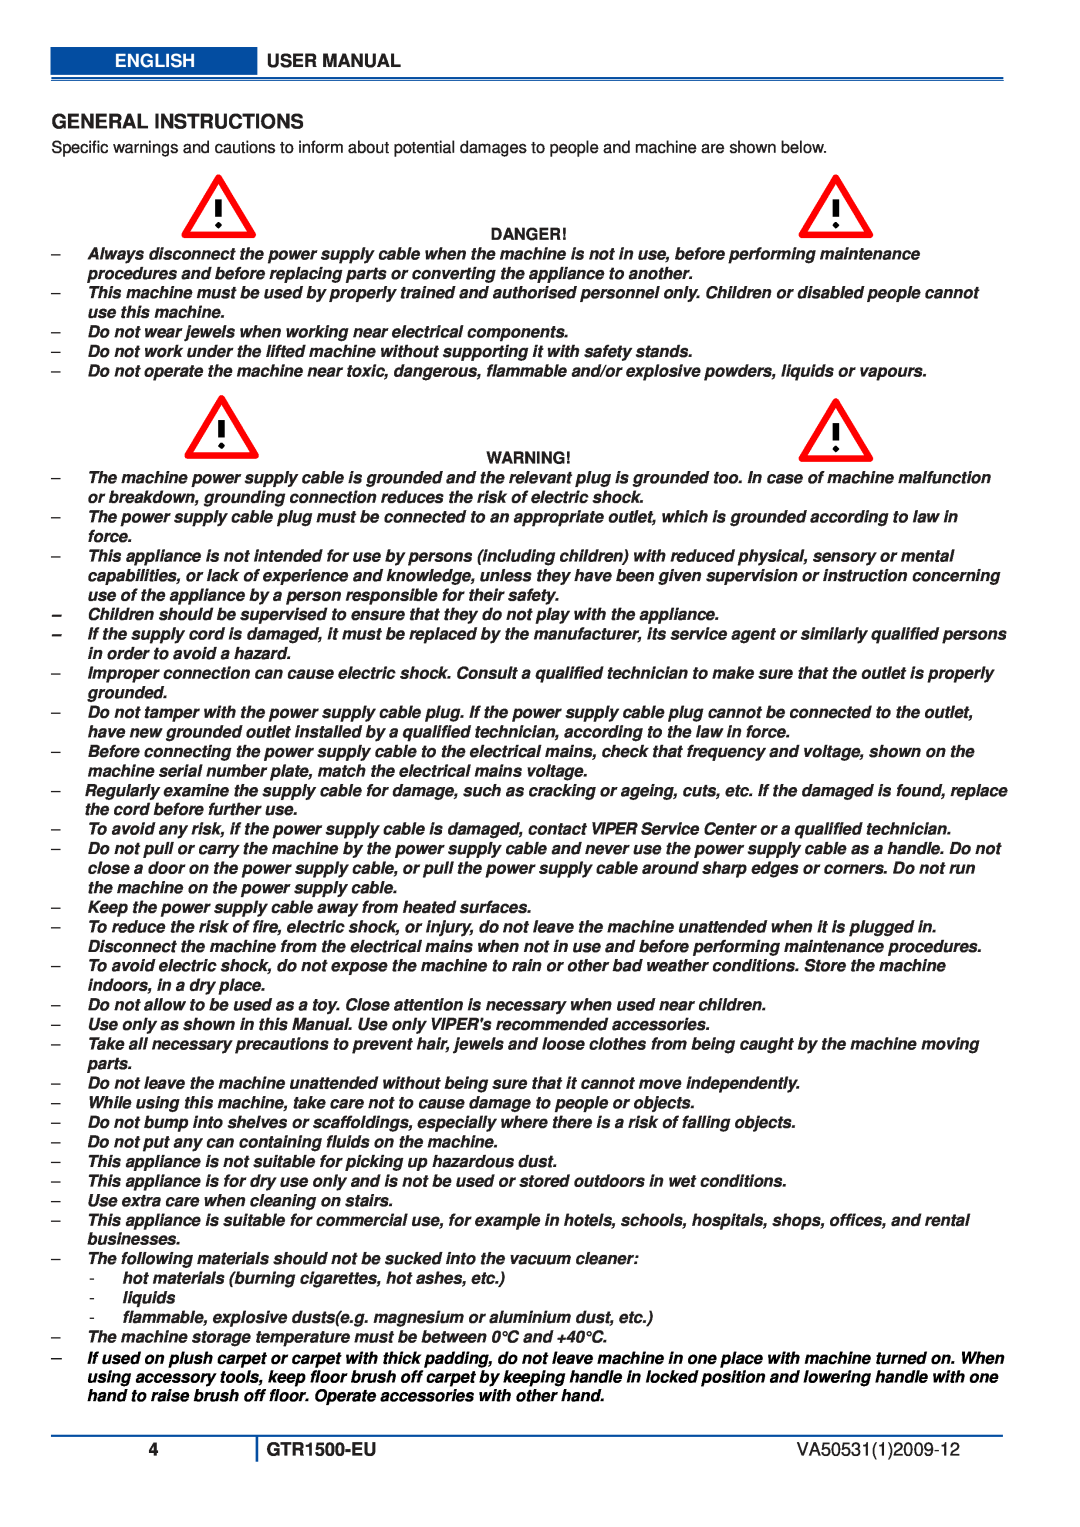 Viper GTR1500-EU user manual General Instructions, English, VA5053112009-12 